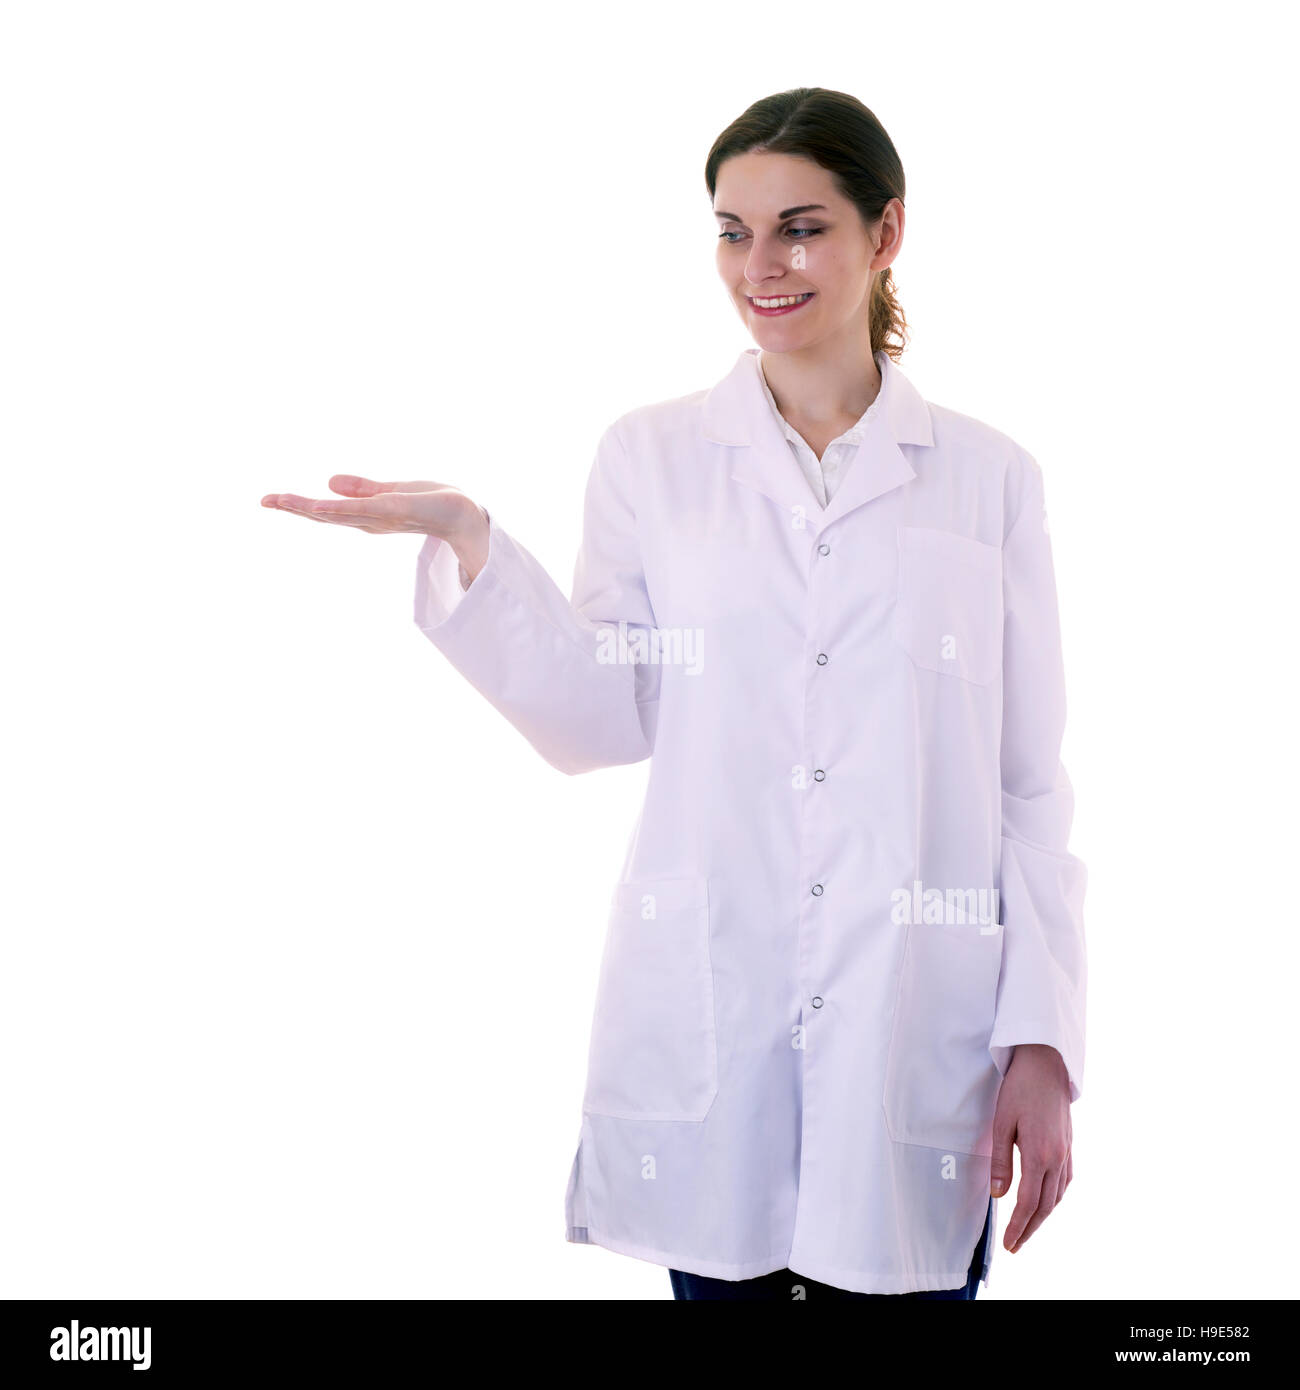 Ärztin Assistentin Wissenschaftler im weißen Kittel über isolierte Hintergrund Stockfoto